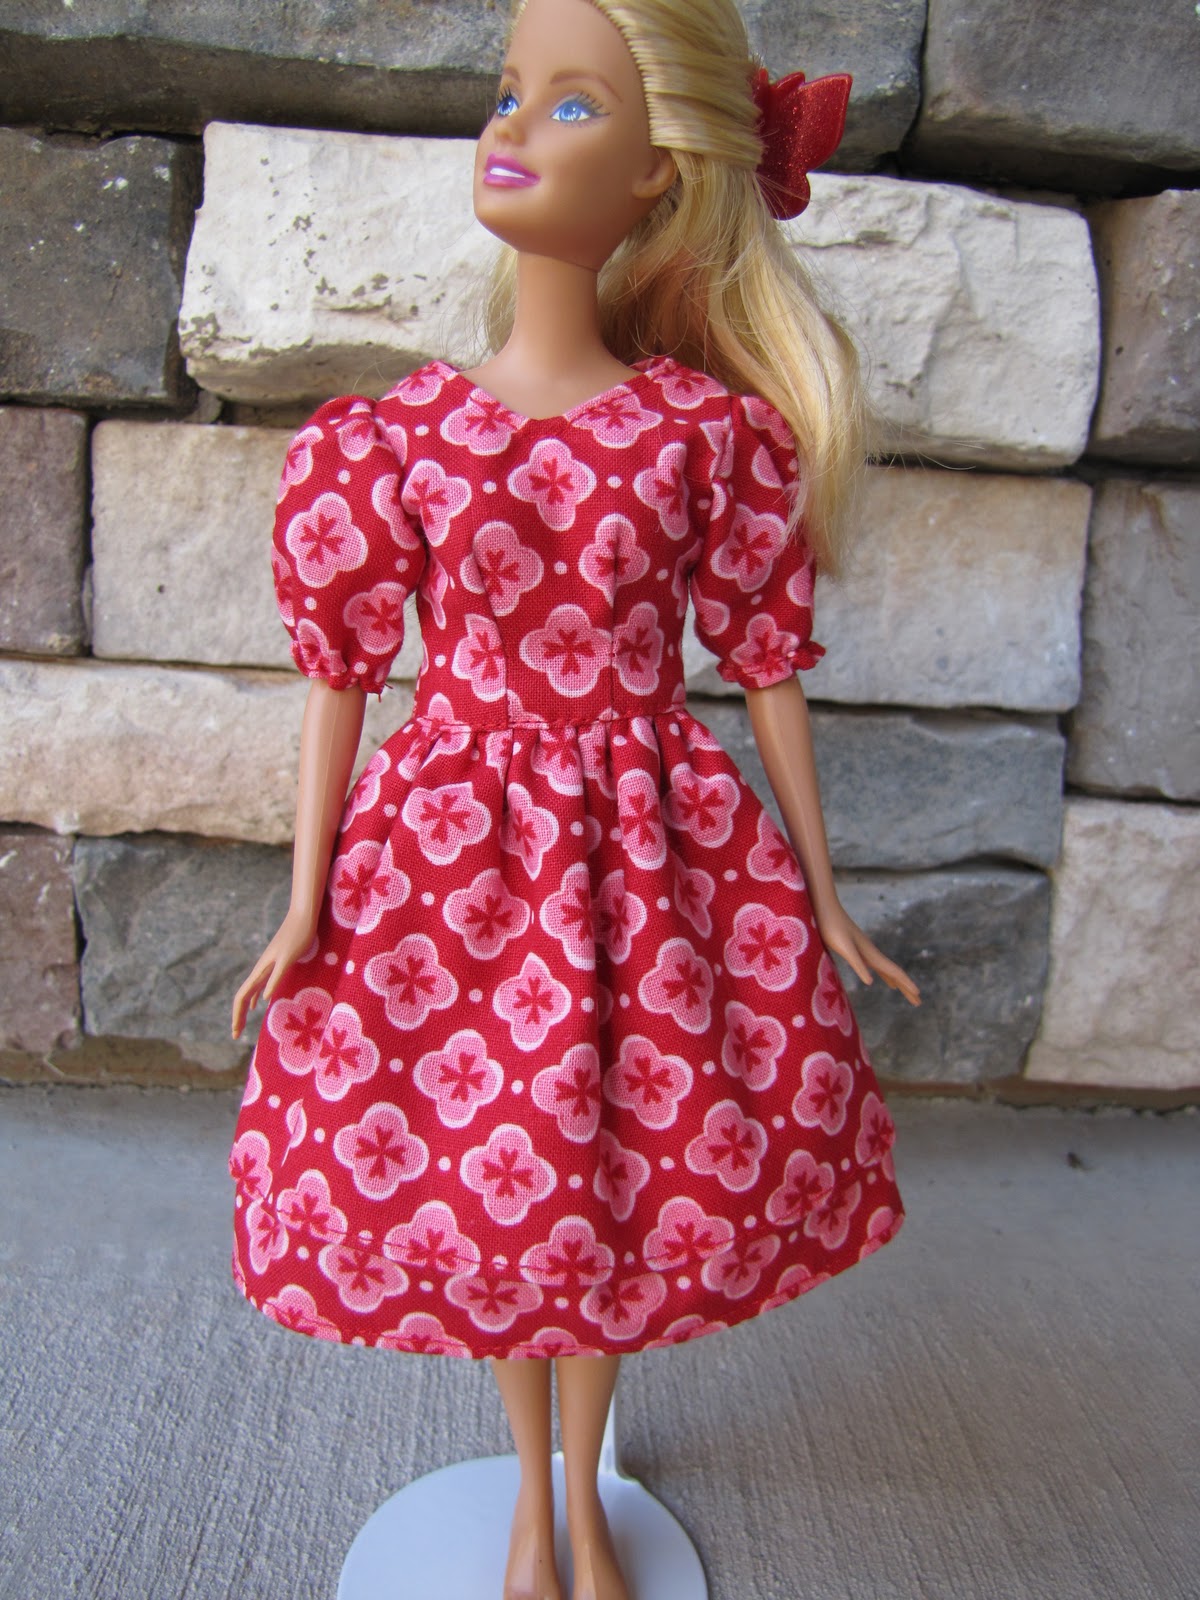 Modest Barbie Style: September 2010